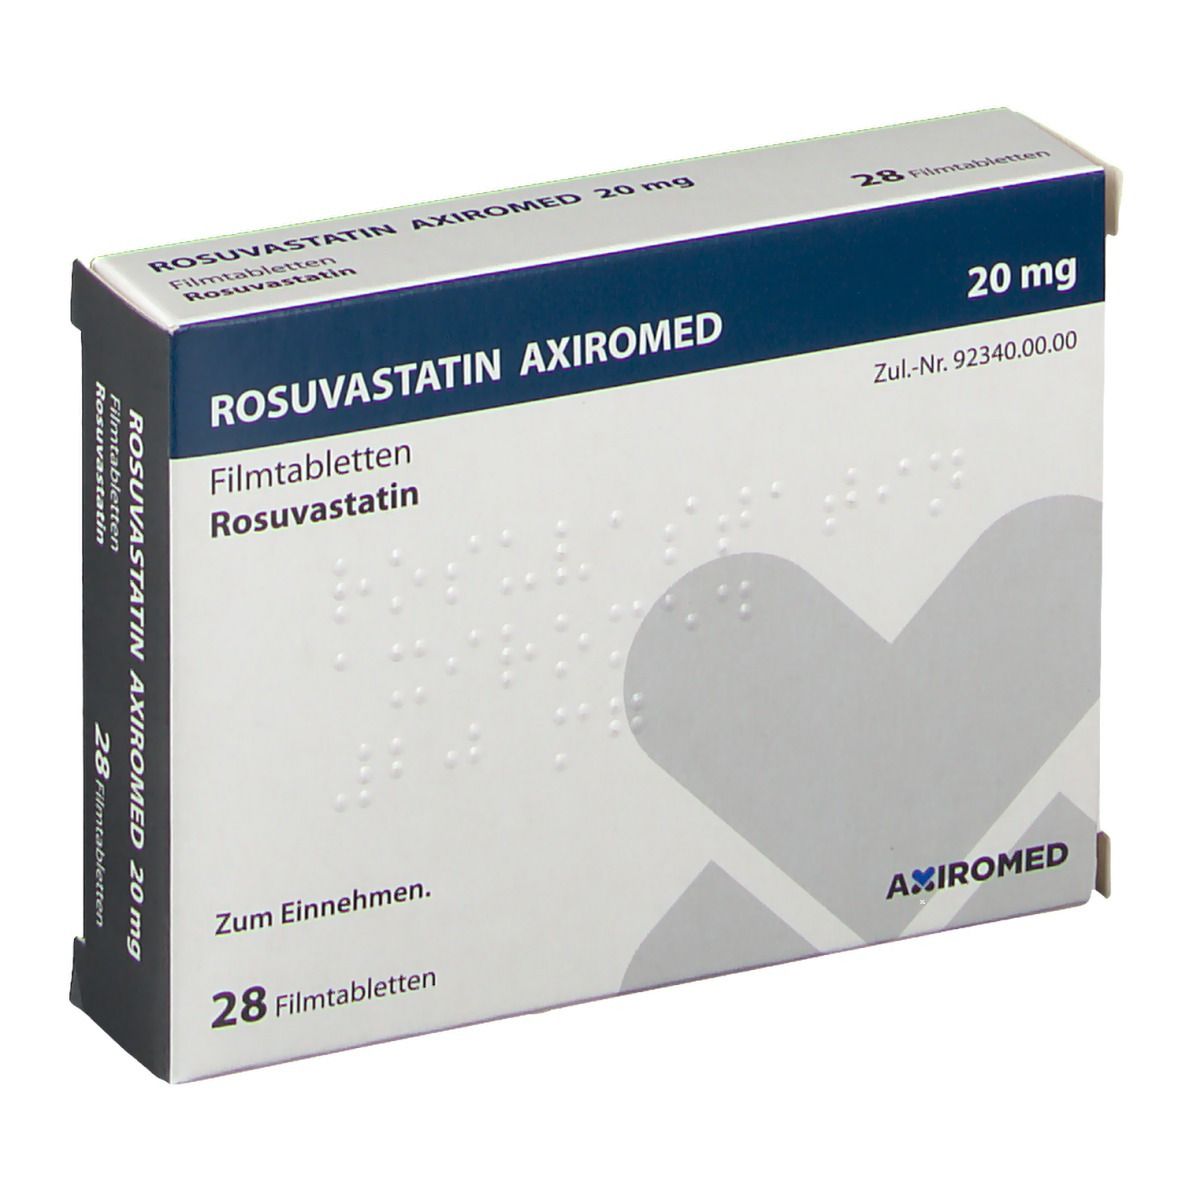 ROSUVASTATIN AXIROMED 20 mg